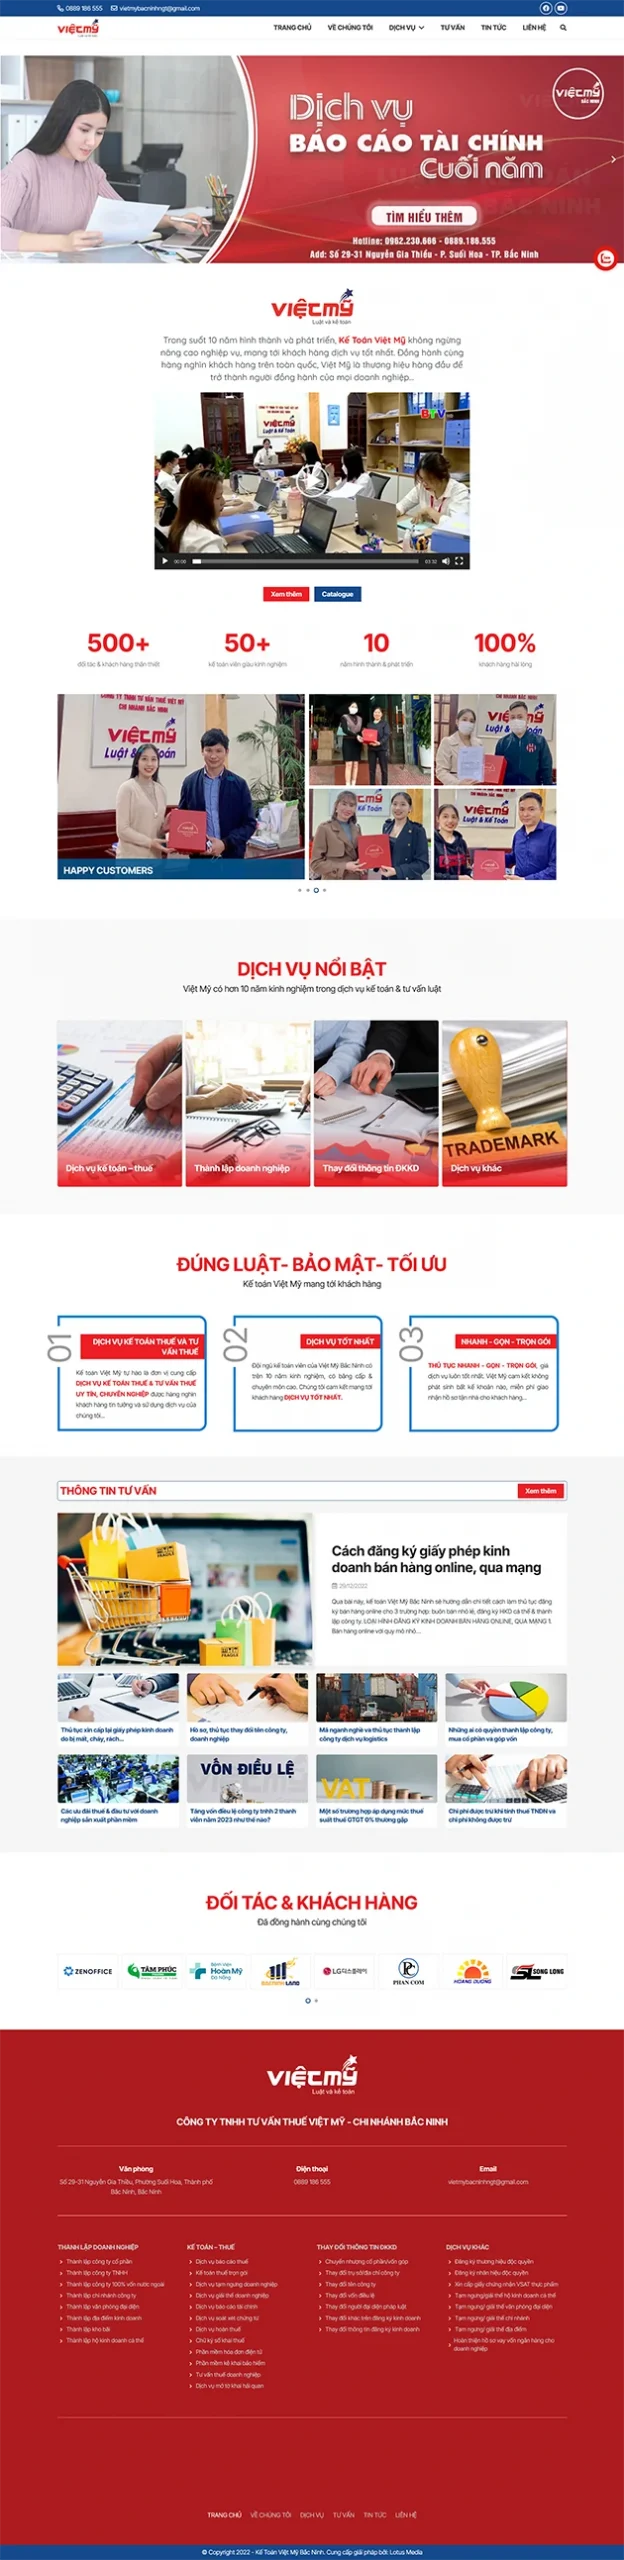 mẫu website kế toán Việt Mỹ Bắc Ninh - Full screen